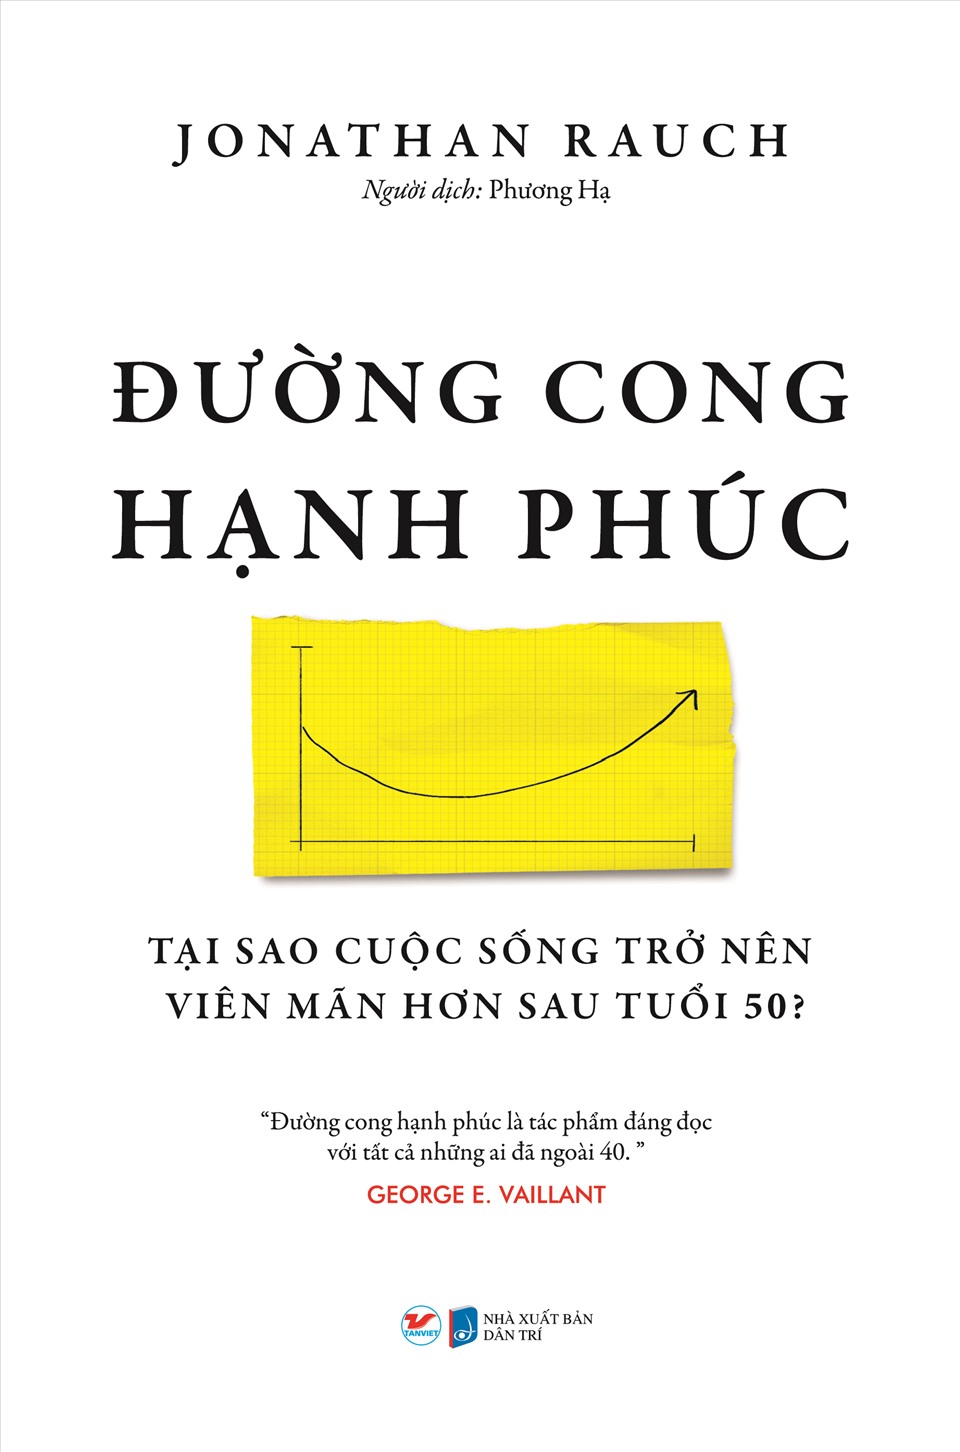 “Đường cong hạnh phúc do Nhà xuất bản Dân Trí liên kết với Cty CP Văn hóa và Giáo dục Tân Việt phát hành. Ảnh: Tân Việt